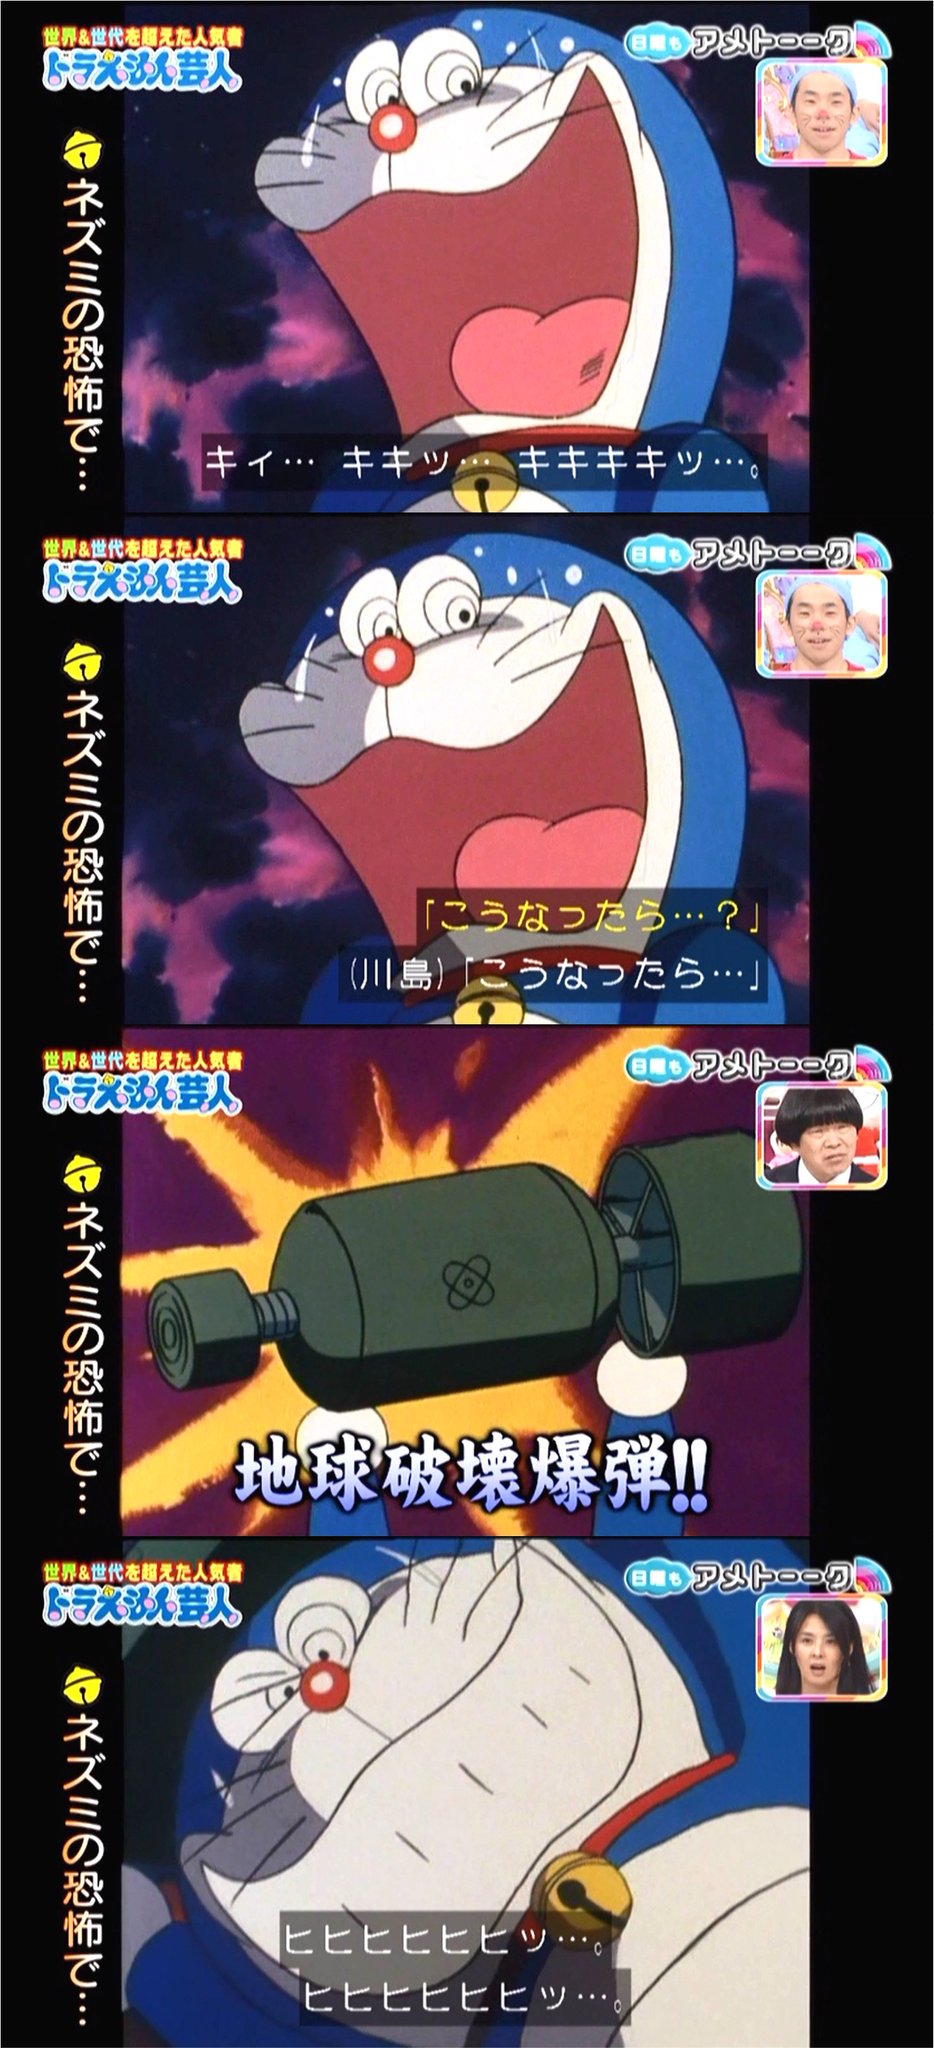 嘲笑のひよこ すすき Di Twitter ちきゅうはかいばくだん ドラえもん Doraemon アメトーーク ドラえもん芸人 地球破壊爆弾